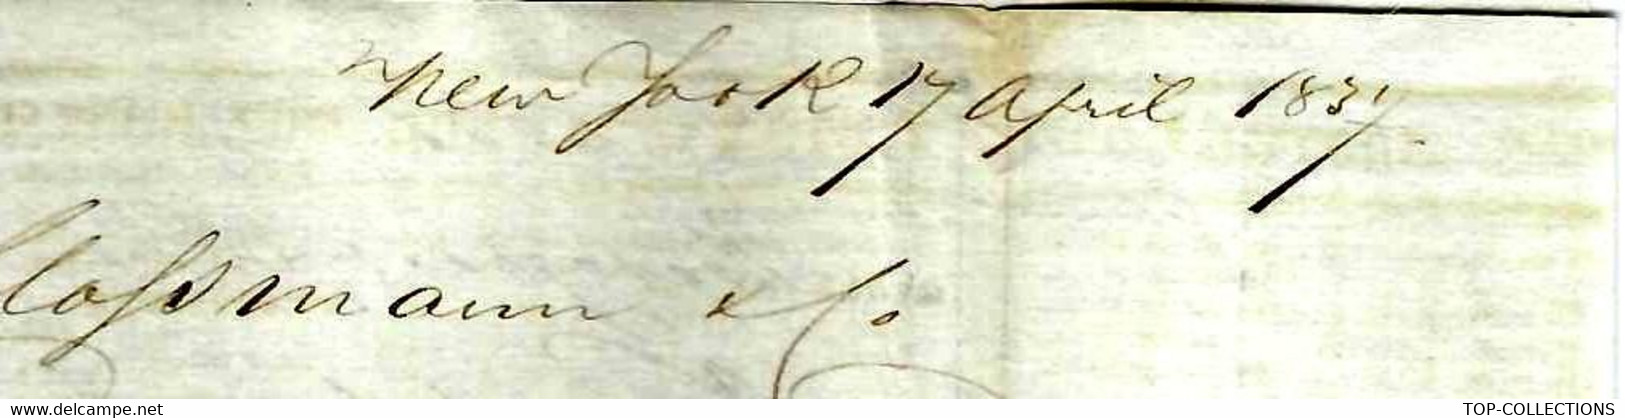 1837  New York Lettre Imprimé De Cotation NEGOCE COMMERCE INTERNATIONAL France ETATS UNIS  => Clossman  Vins à Bordeaux - Etats-Unis